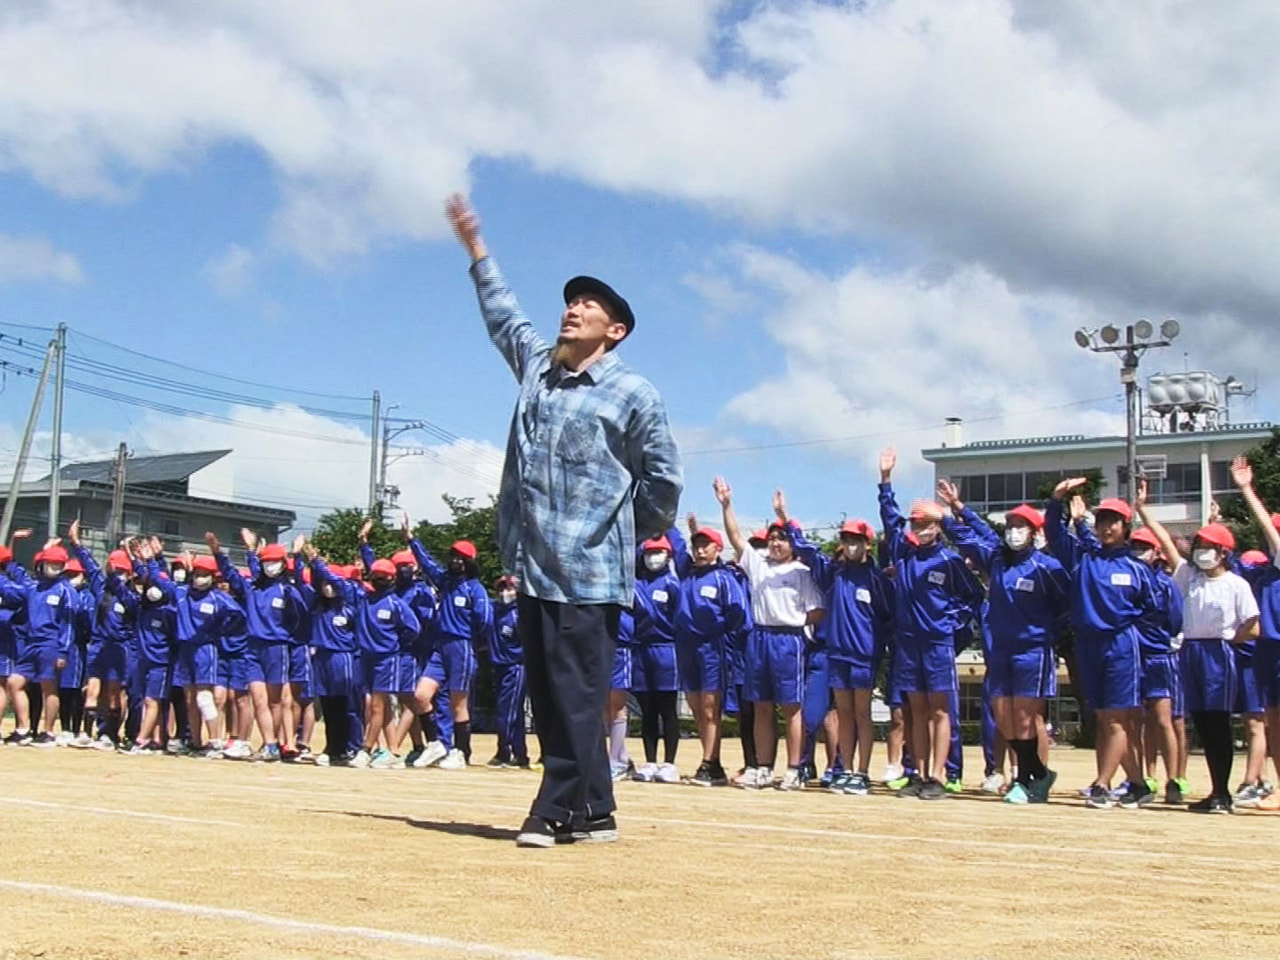 高山市の北小学校では、児童たちが運動会でヒップホップダンスを披露しようと、プロの...